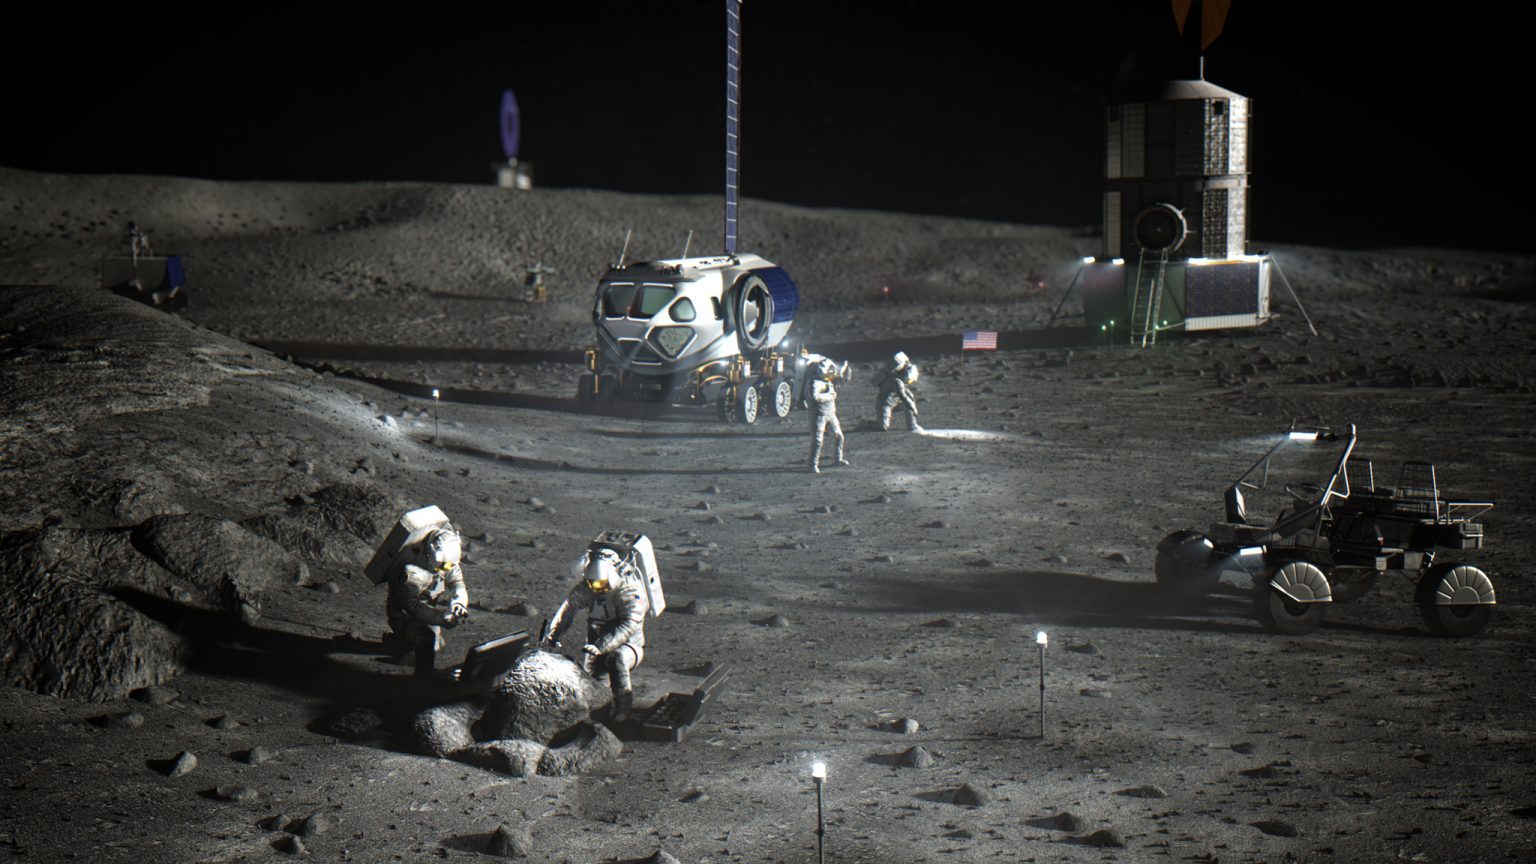 Artemis Ana Kampı kurmak için erken çalışmalar yapan Ay'ın güney kutbunda NASA astronotlarının sanatsal tasviri.